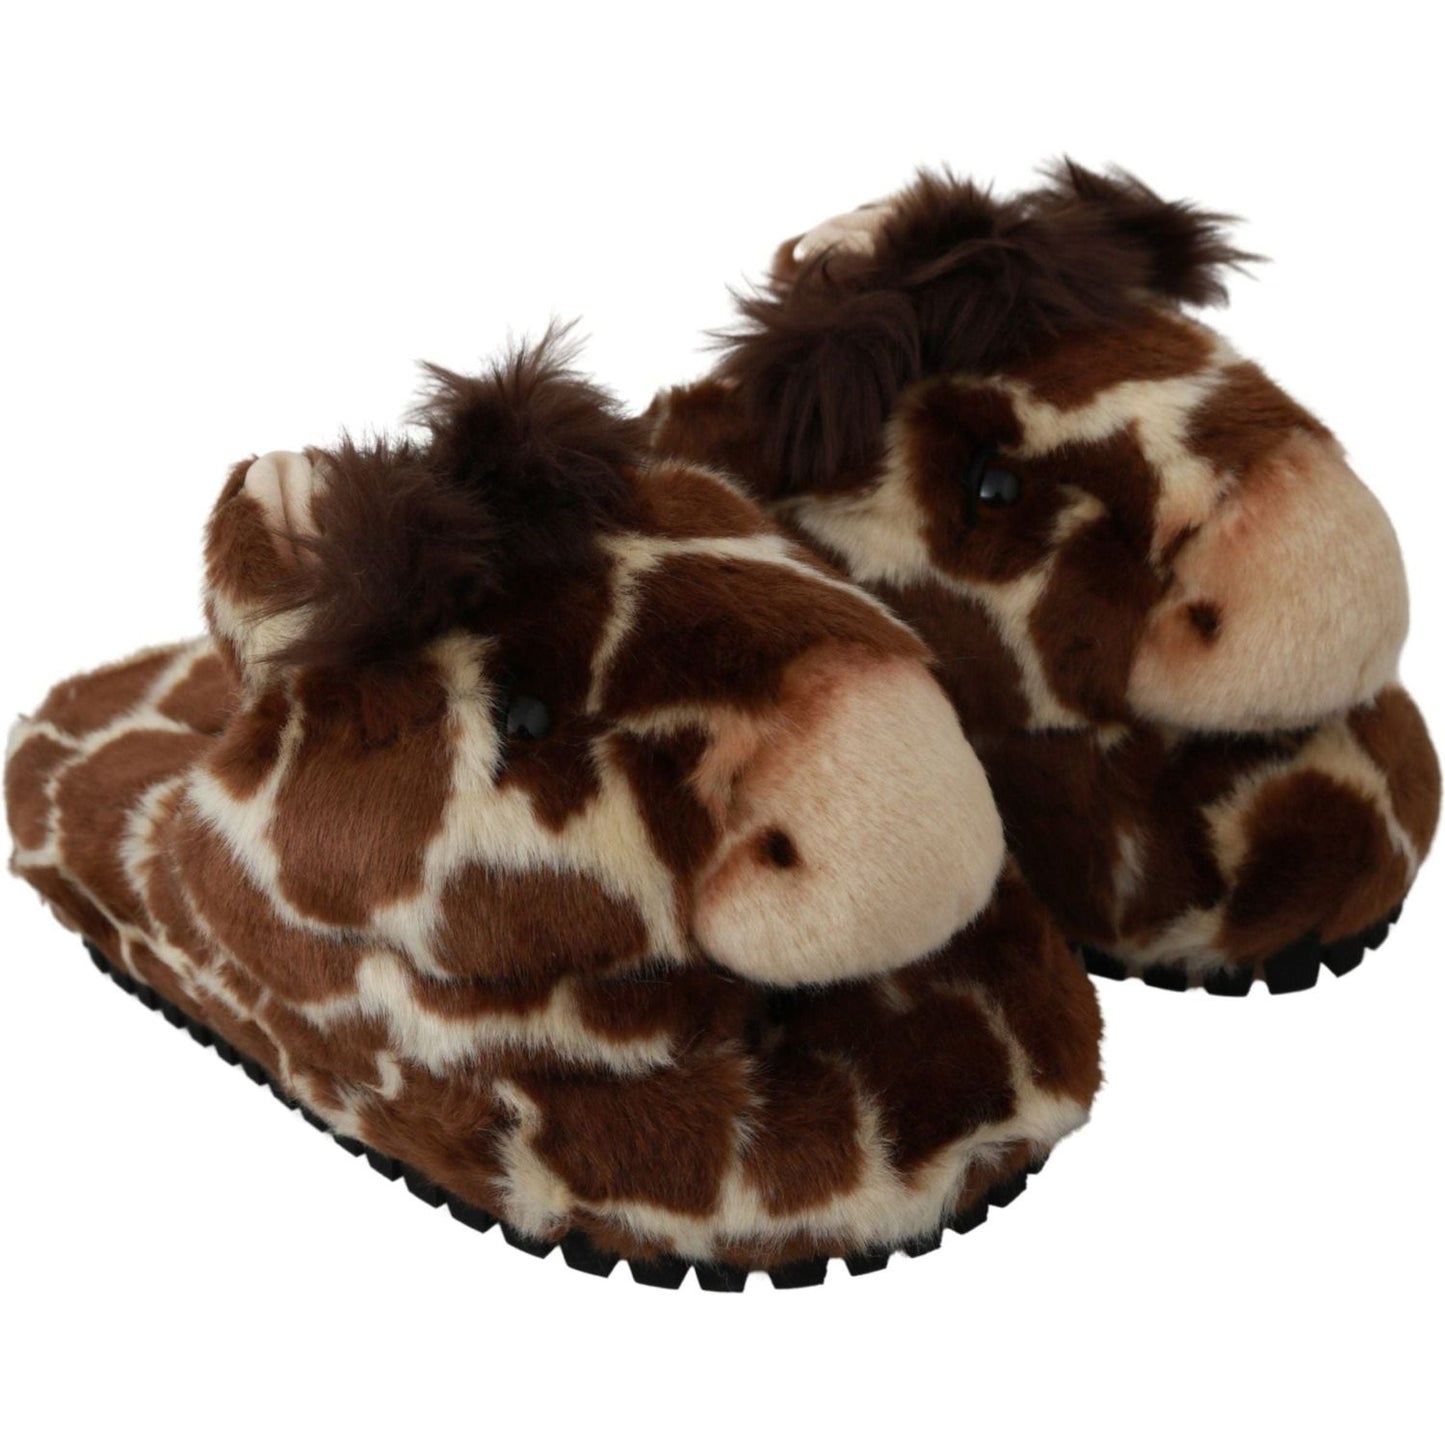 Dolce & Gabbana Elegant Giraffe Pattern Slides for Sophisticated Comfort brown-giraffe-slippers-flats-sandals-shoes IMG_1591-scaled-b8f6c264-47e.jpg